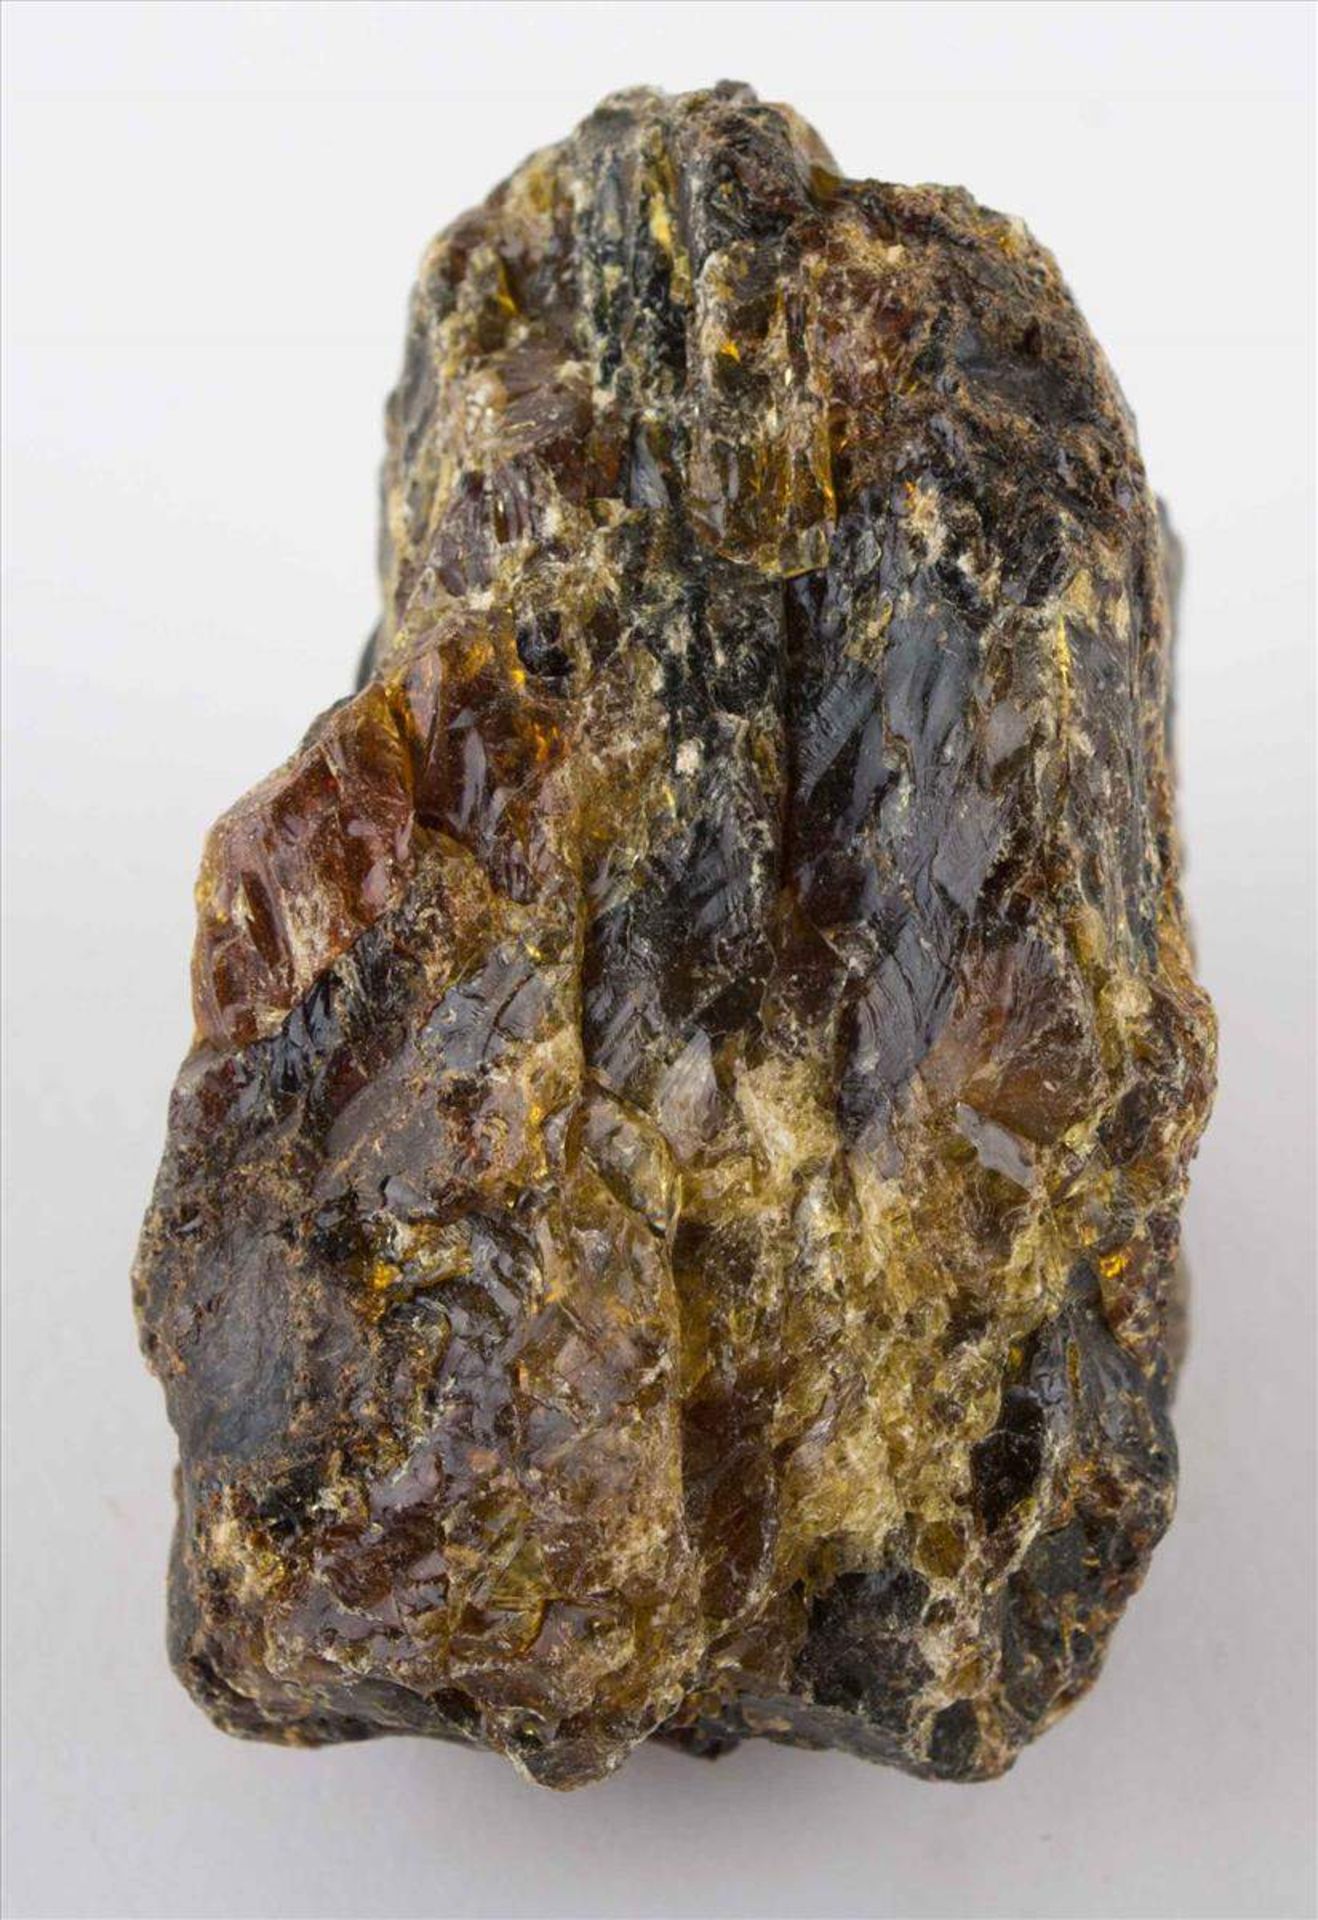 Naturbernstein / Natural amber4,5 cm x 7,5 cm x 6 cm, Gewicht  ca. 126 g. /
4,5 cm x 7,5 cm x 6